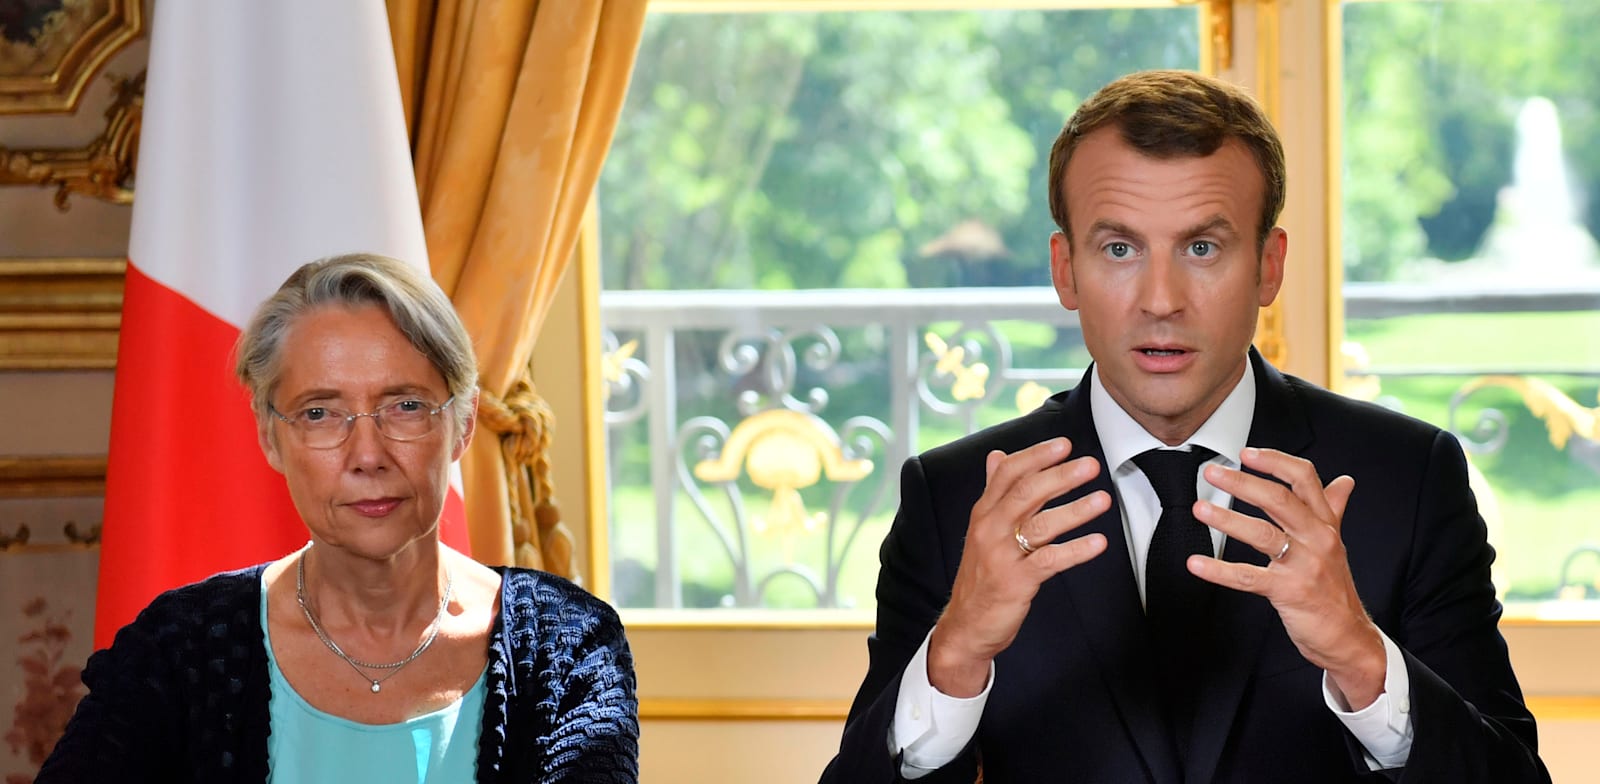 נשיא צרפת עמנואל מקרון וראשת הממשלה אליזבת בורן בארמון האליזה / צילום: Associated Press, Julien de Rosa